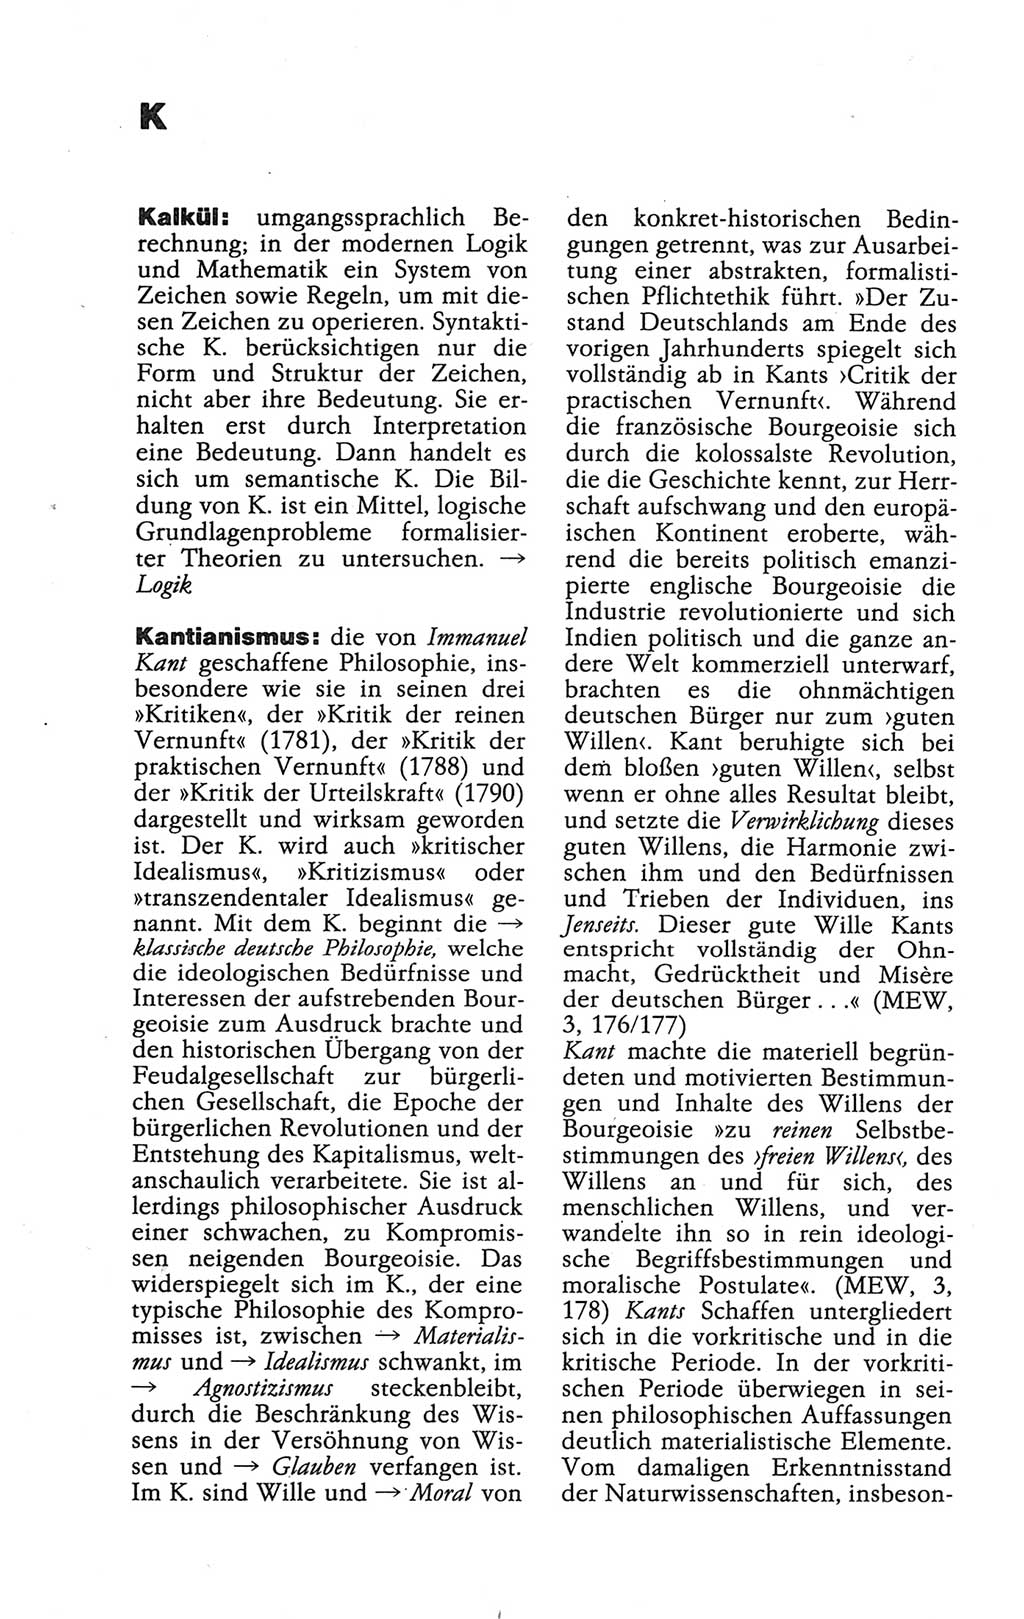 Wörterbuch der marxistisch-leninistischen Philosophie [Deutsche Demokratische Republik (DDR)] 1986, Seite 266 (Wb. ML Phil. DDR 1986, S. 266)